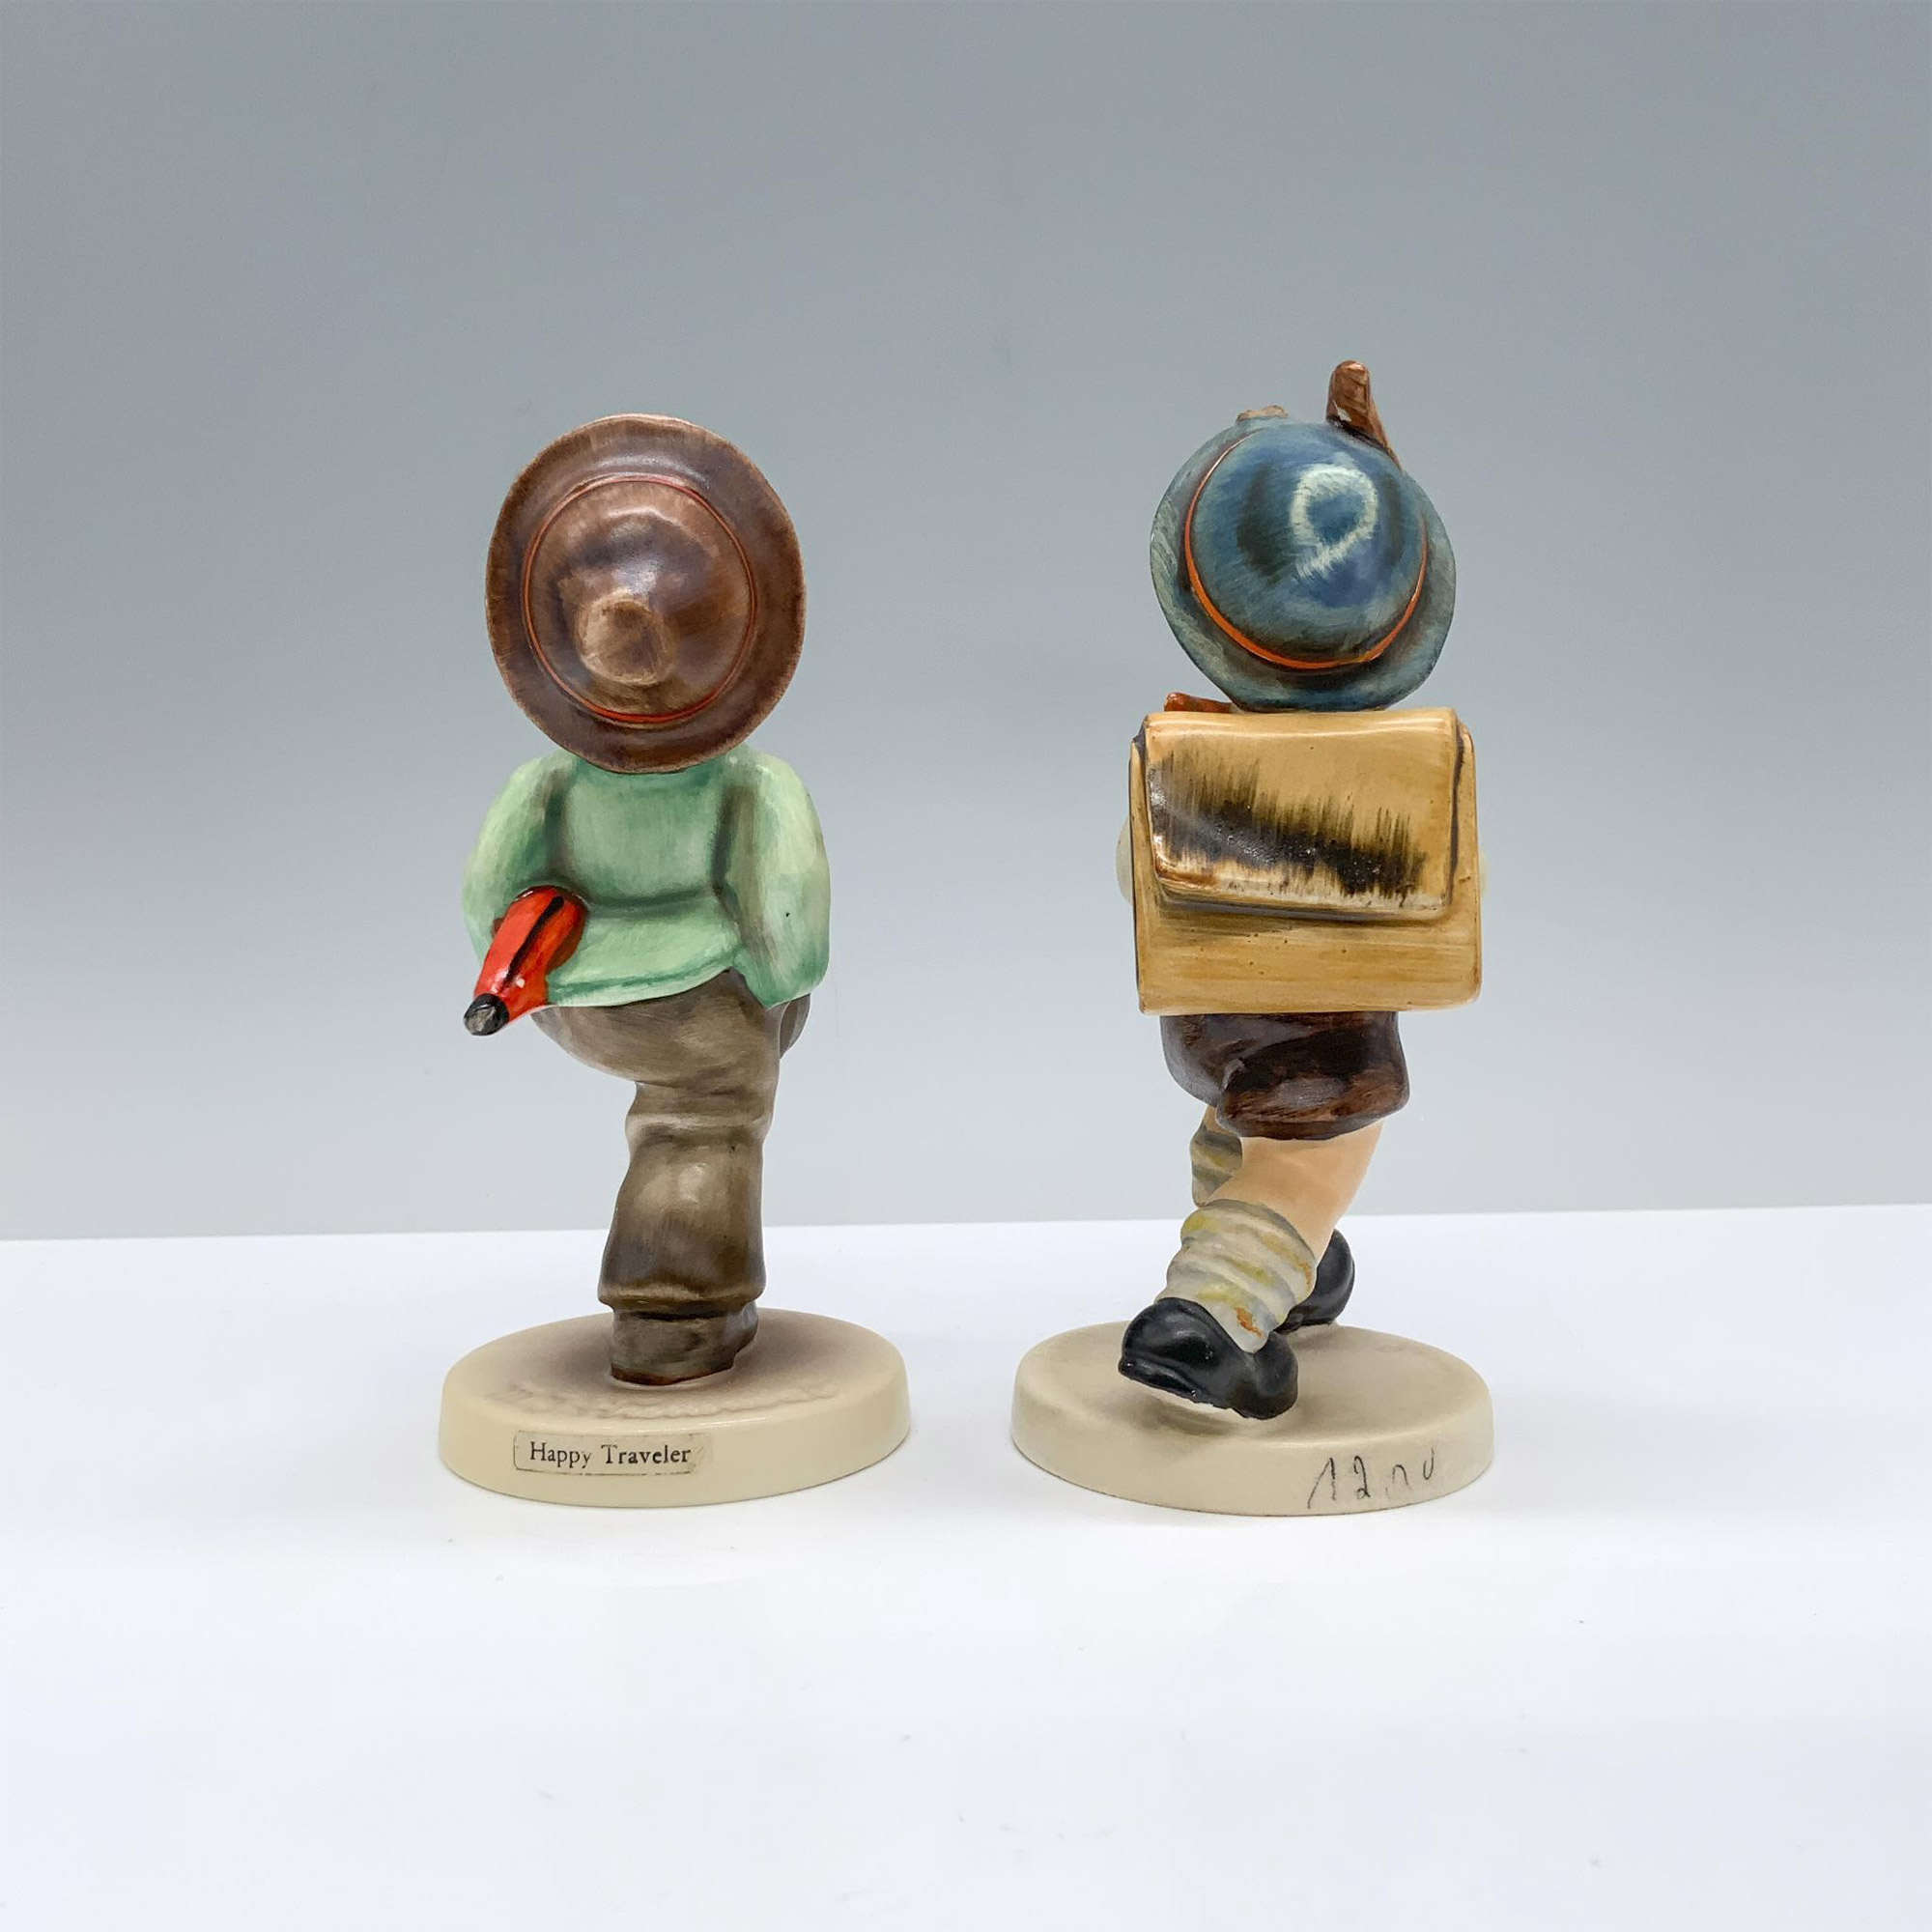 2pc Goebel Hummel Figurines, Happy Traveler & School Boy - Image 2 of 3